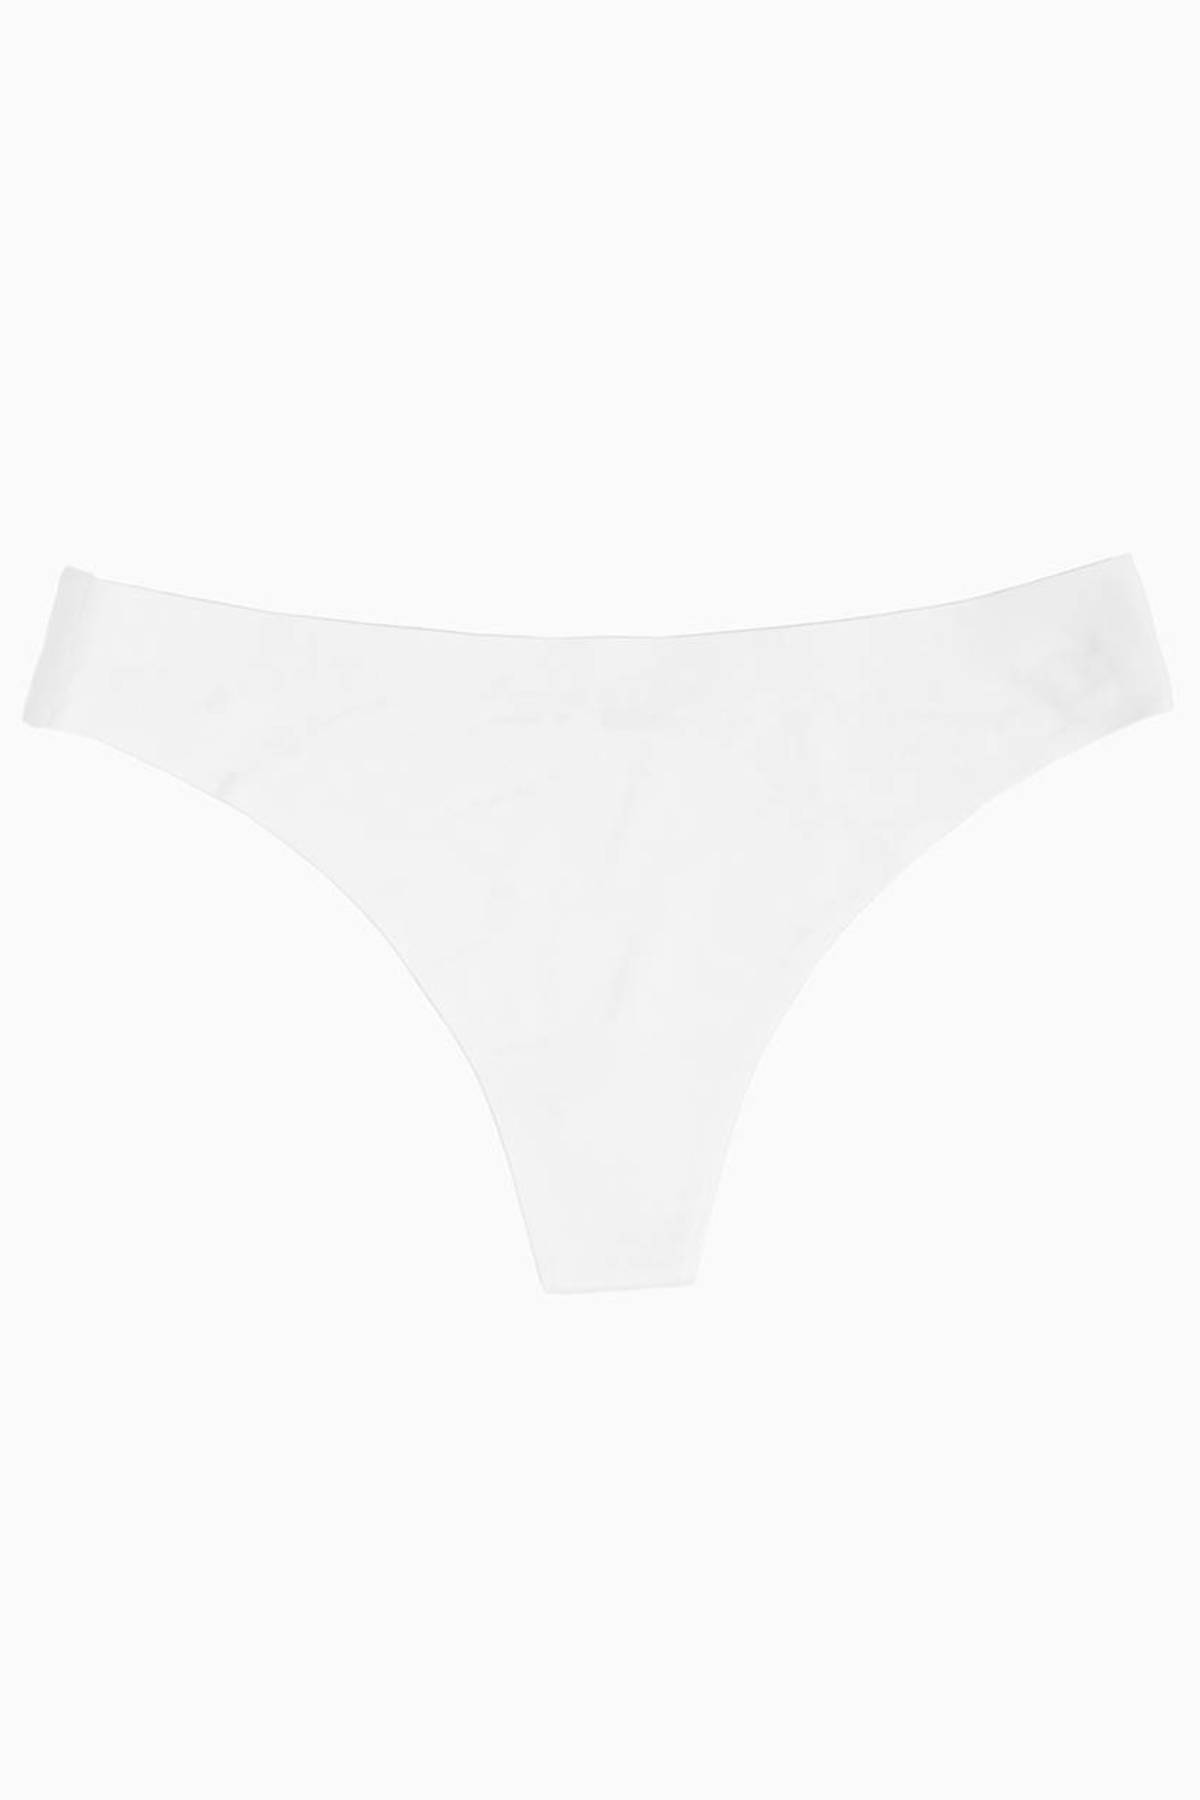 Sienna Seamless Thong in White - $10 | Tobi US